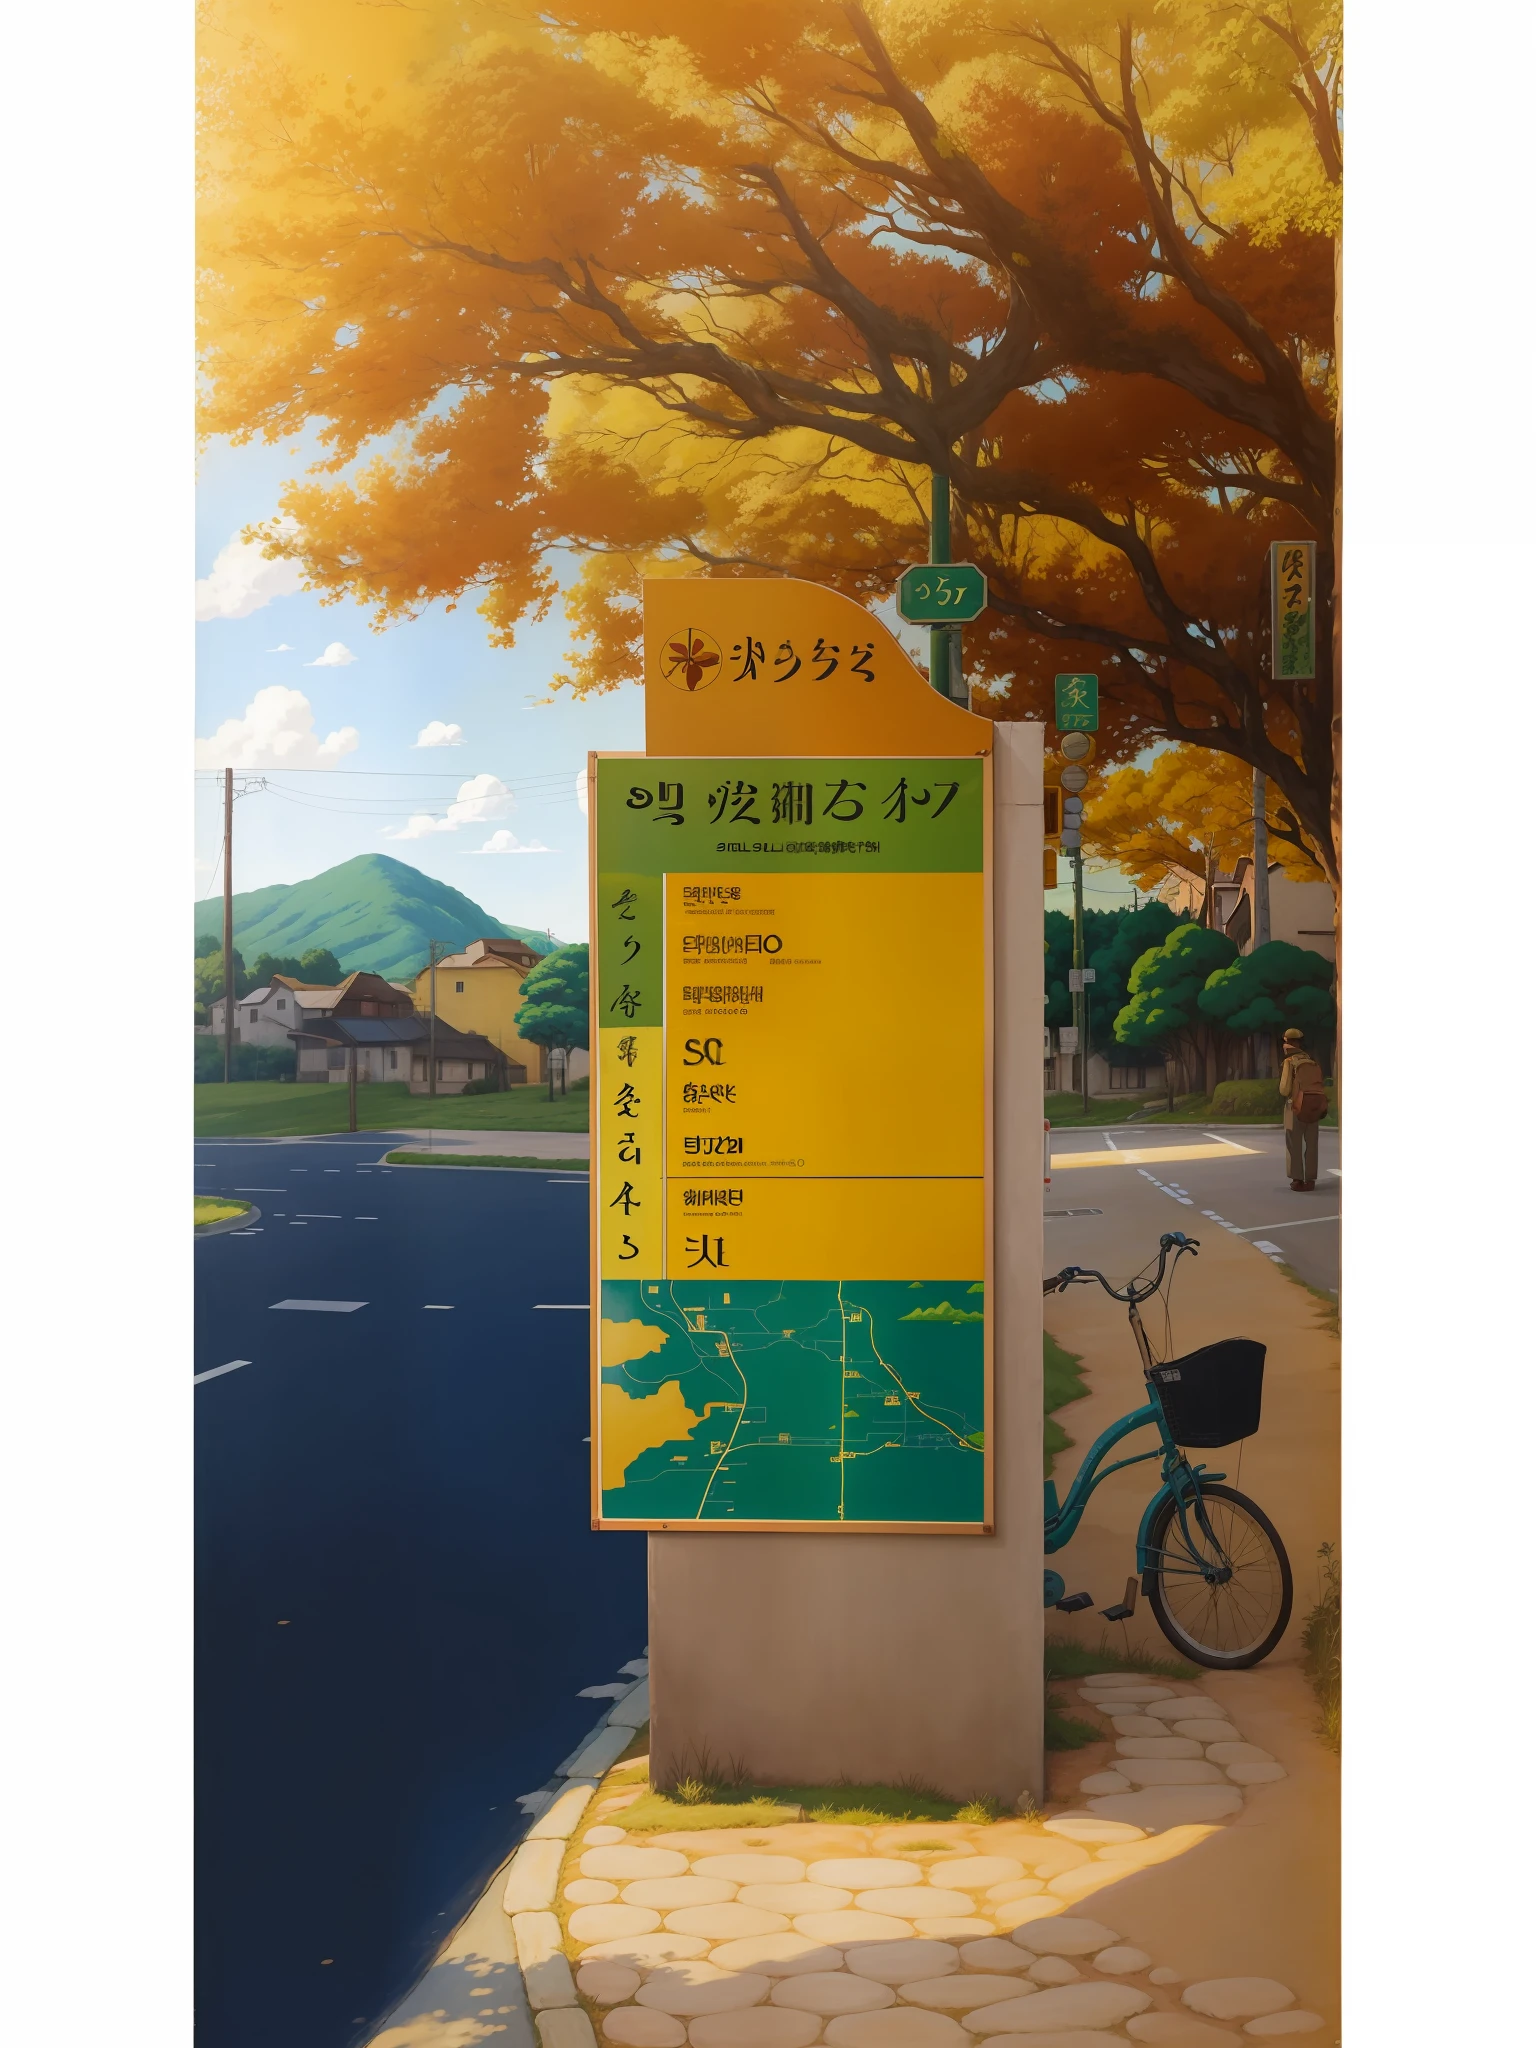 Real, Real, bela e incrível paisagem pintura a óleo Ghibli Studio Miyazaki placa de beira de estrada, cartaz de impressão de rua, Sol quente, poster, ao ar livre, por Lee Jae, ensolarado, feito à mão, map --v6